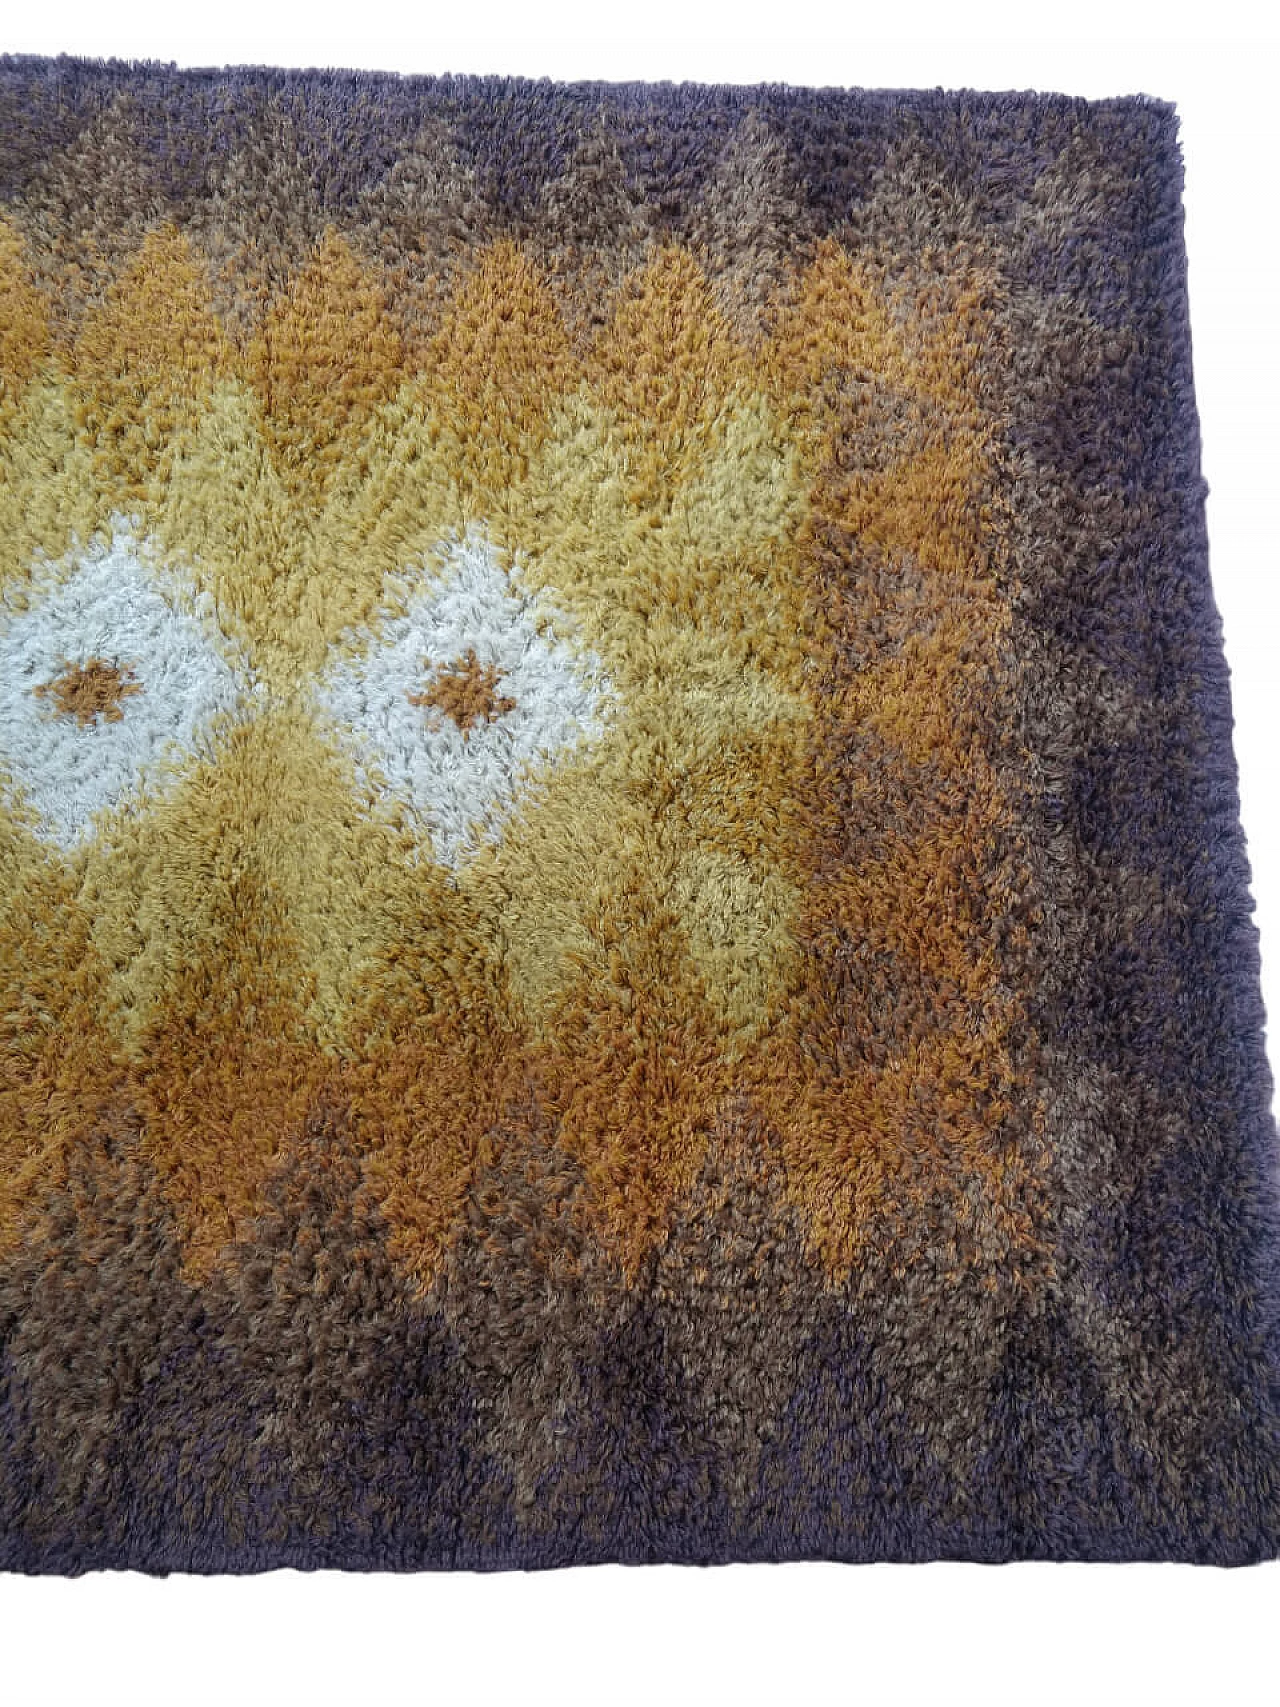 Tappeto danese geometrico in pura lana con tecnica Rya, anni '60 3